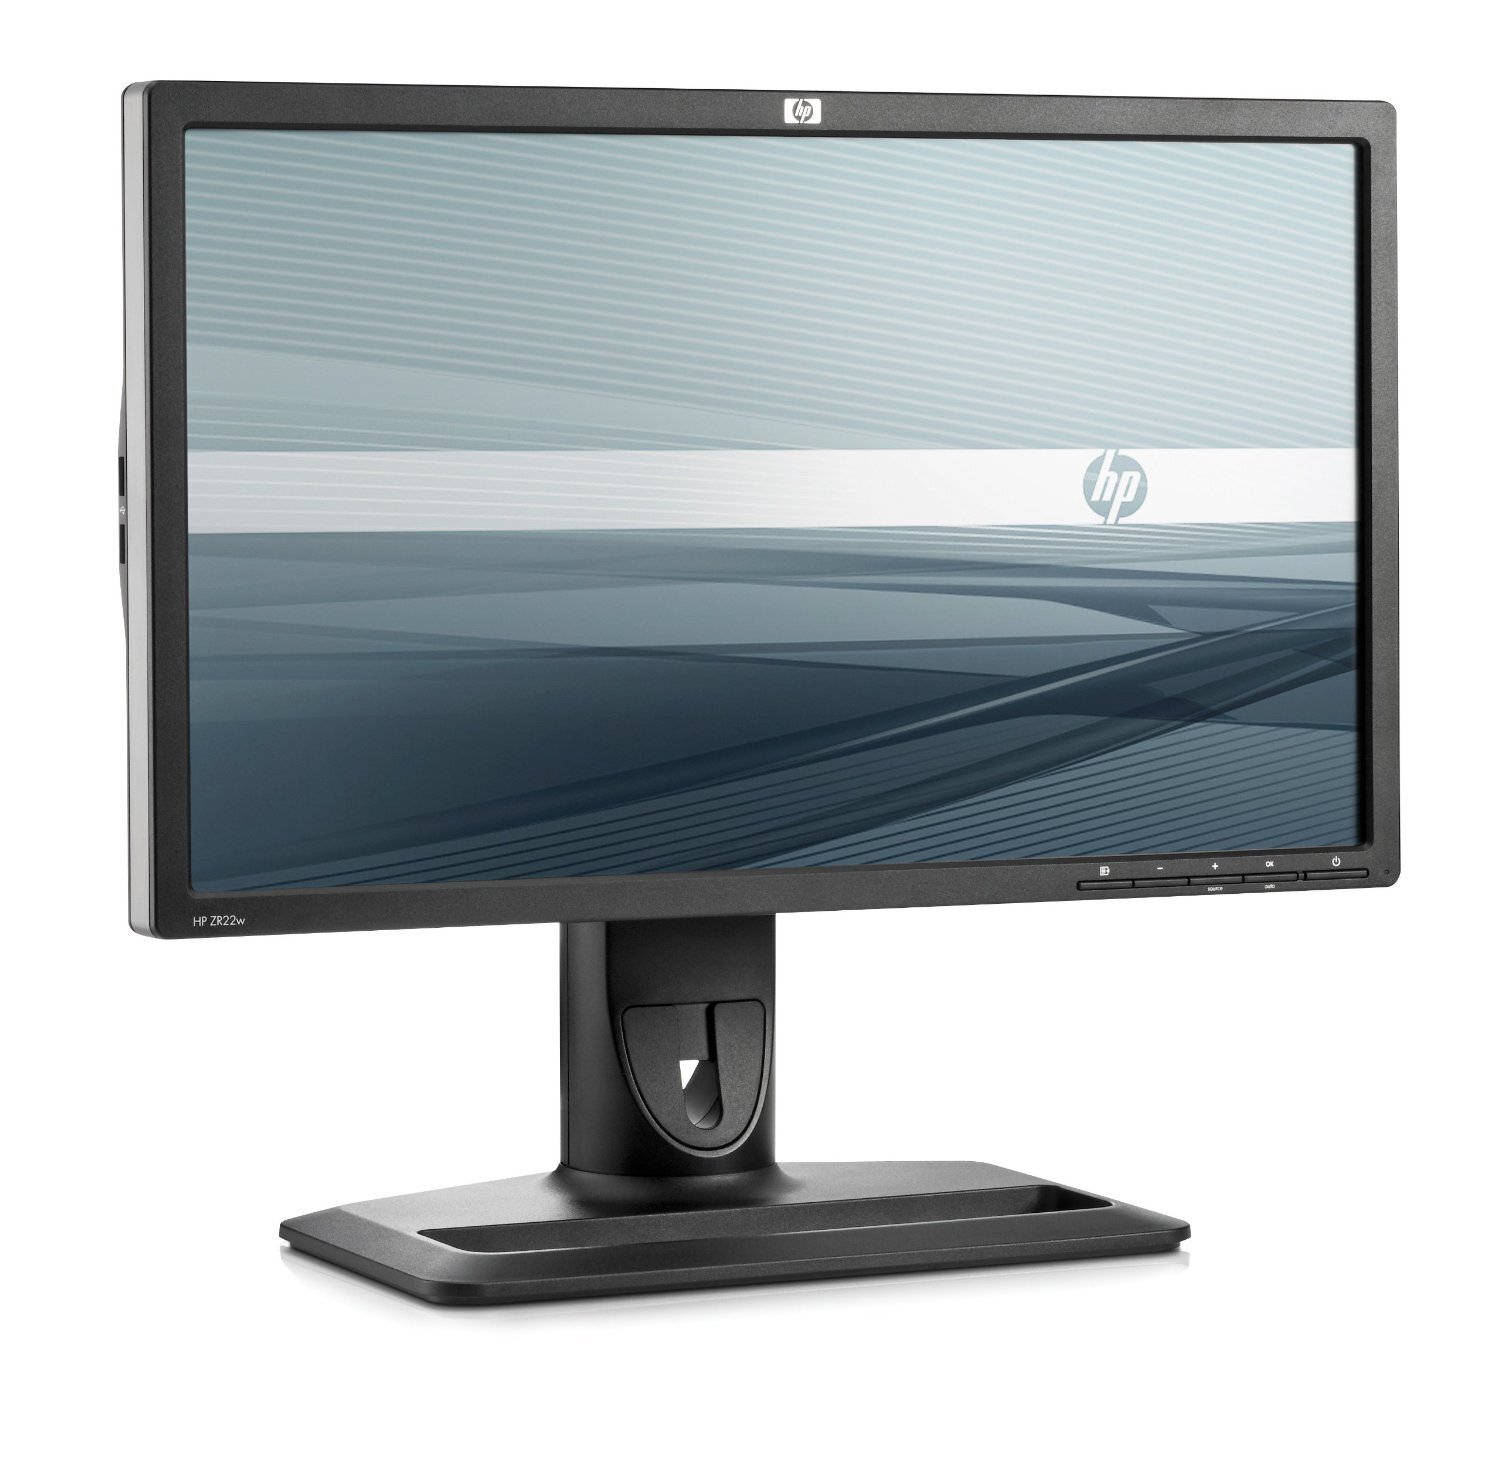 Màn hình máy tính HP ZR22w (VM626A4) - 21.5 inch, LCD